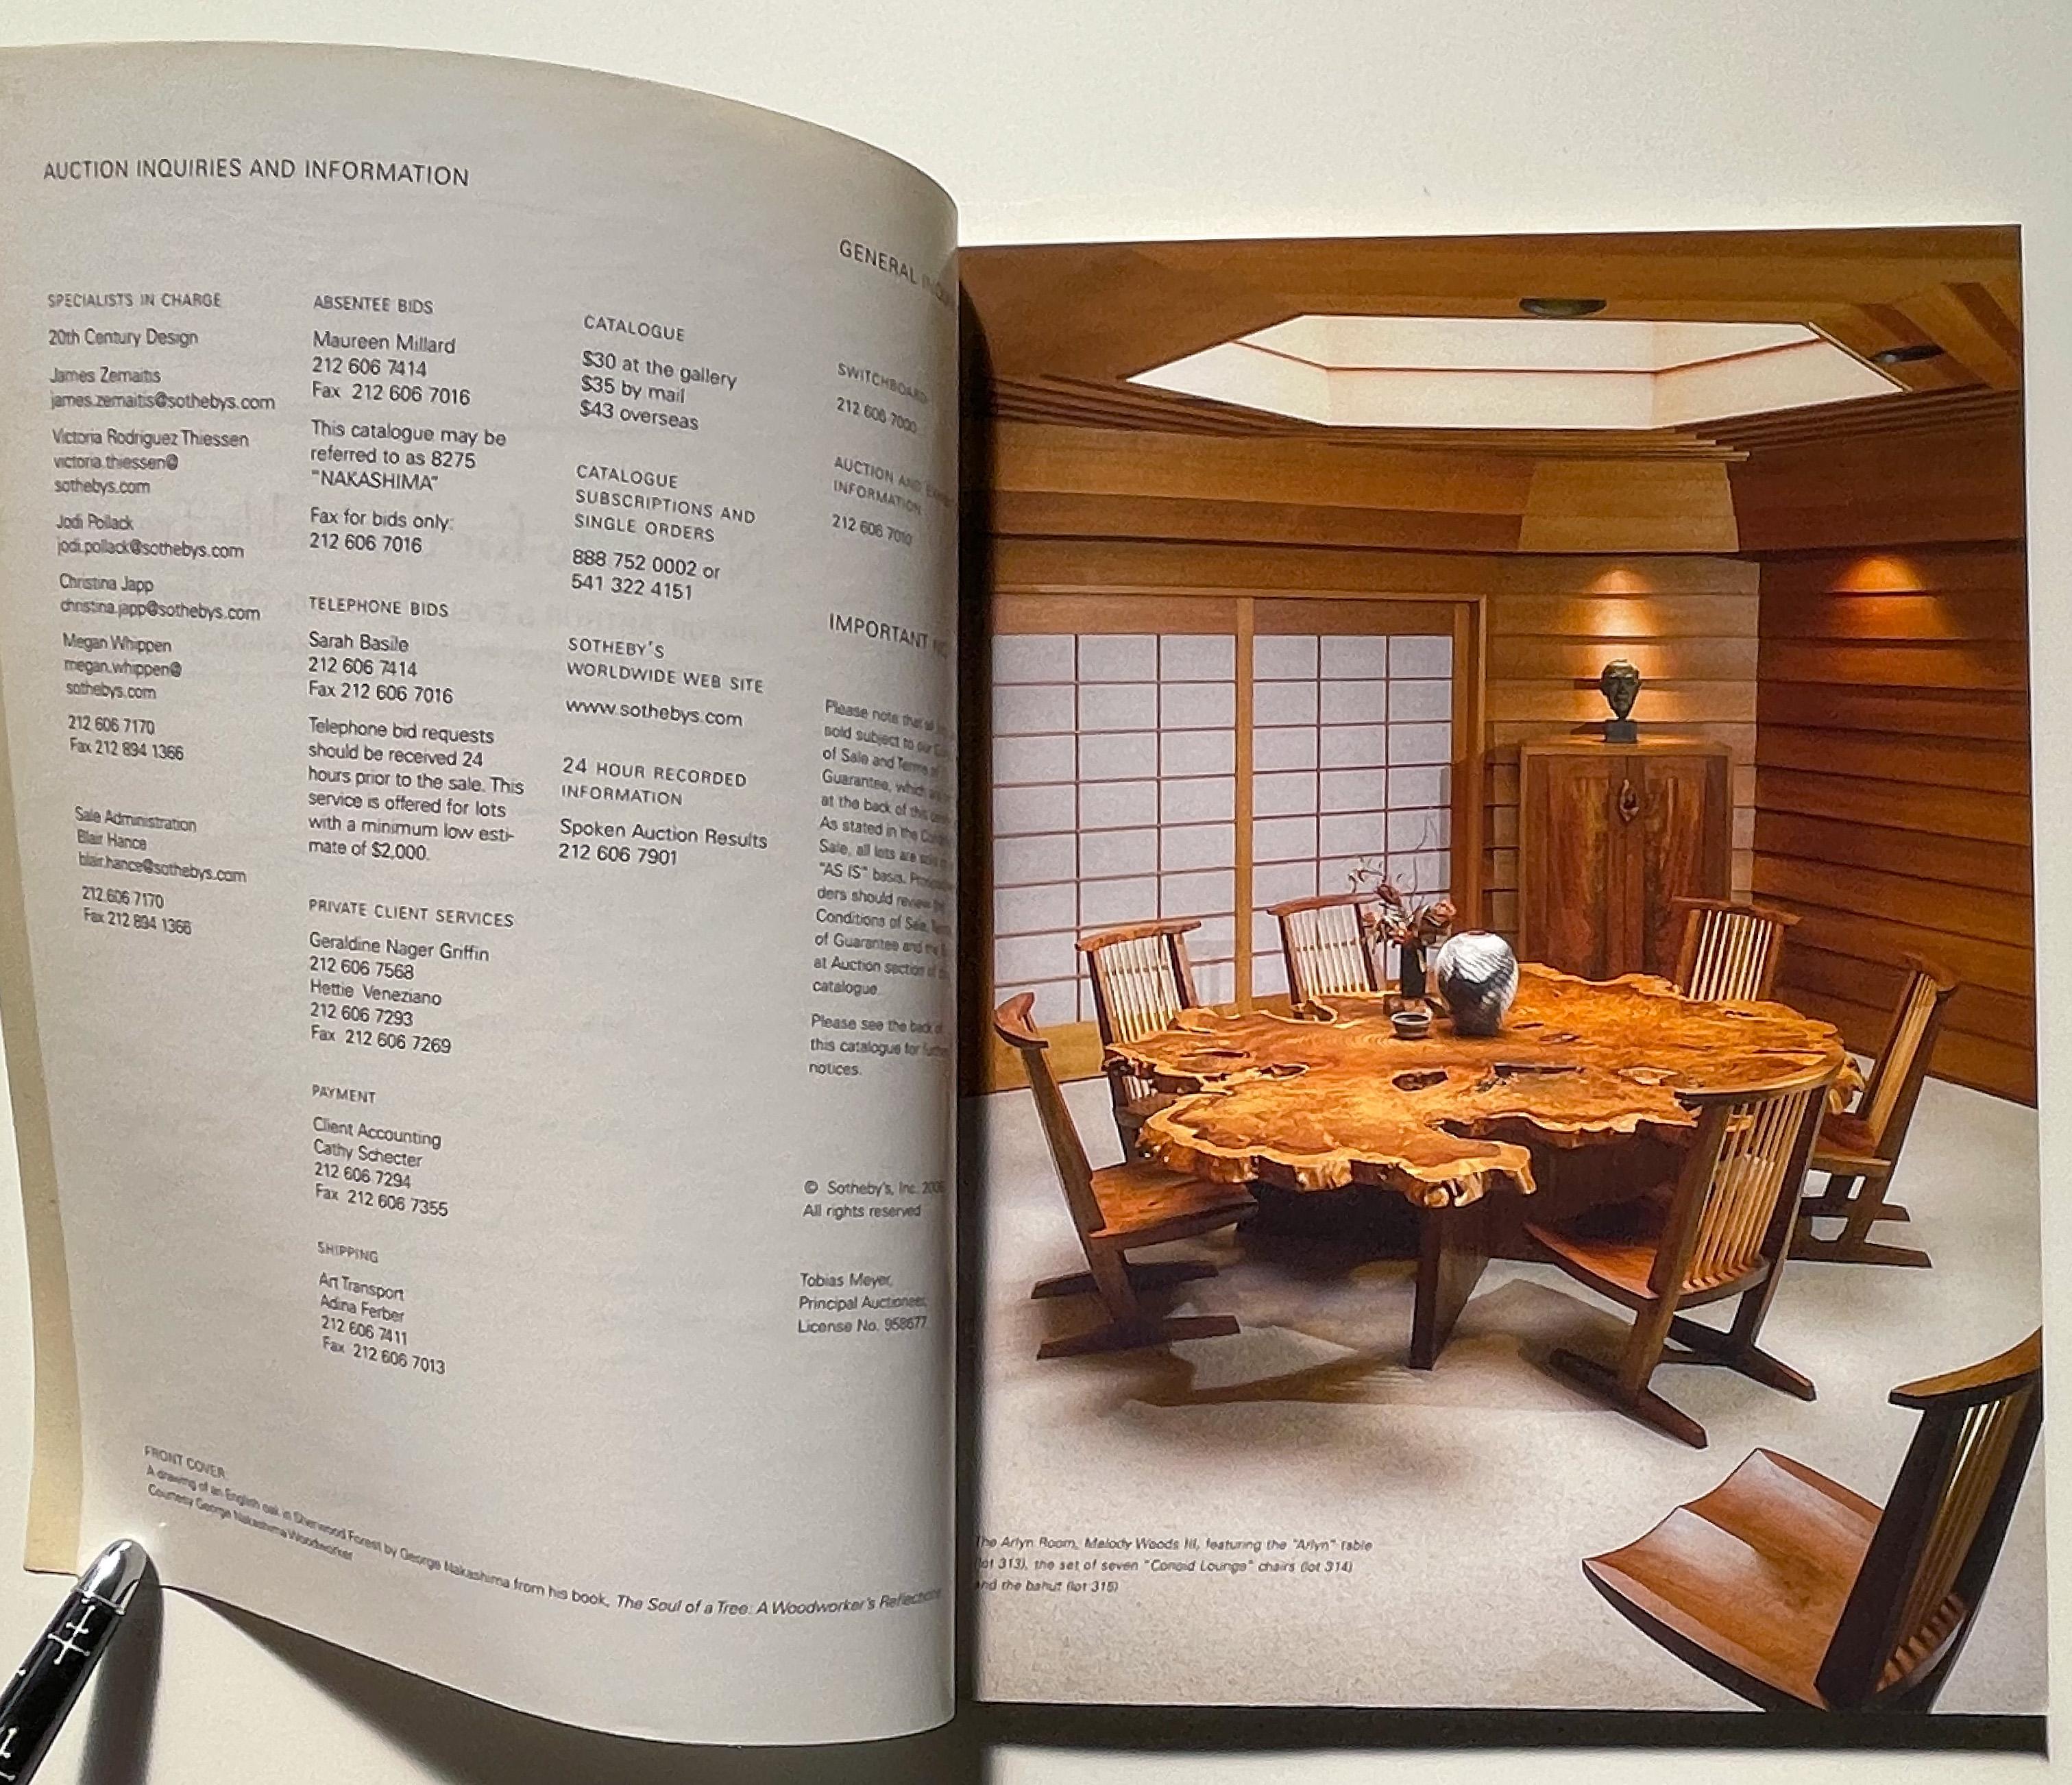 Catalogue d'une vente organisée chez Sotheby's, New York, le 15 décembre 2006, présentant la collection Arthur et Evelyn Krosnick de meubles et luminaires George Nakashima, ou en fait la deuxième collection, puisque la première - 12 pièces - a été